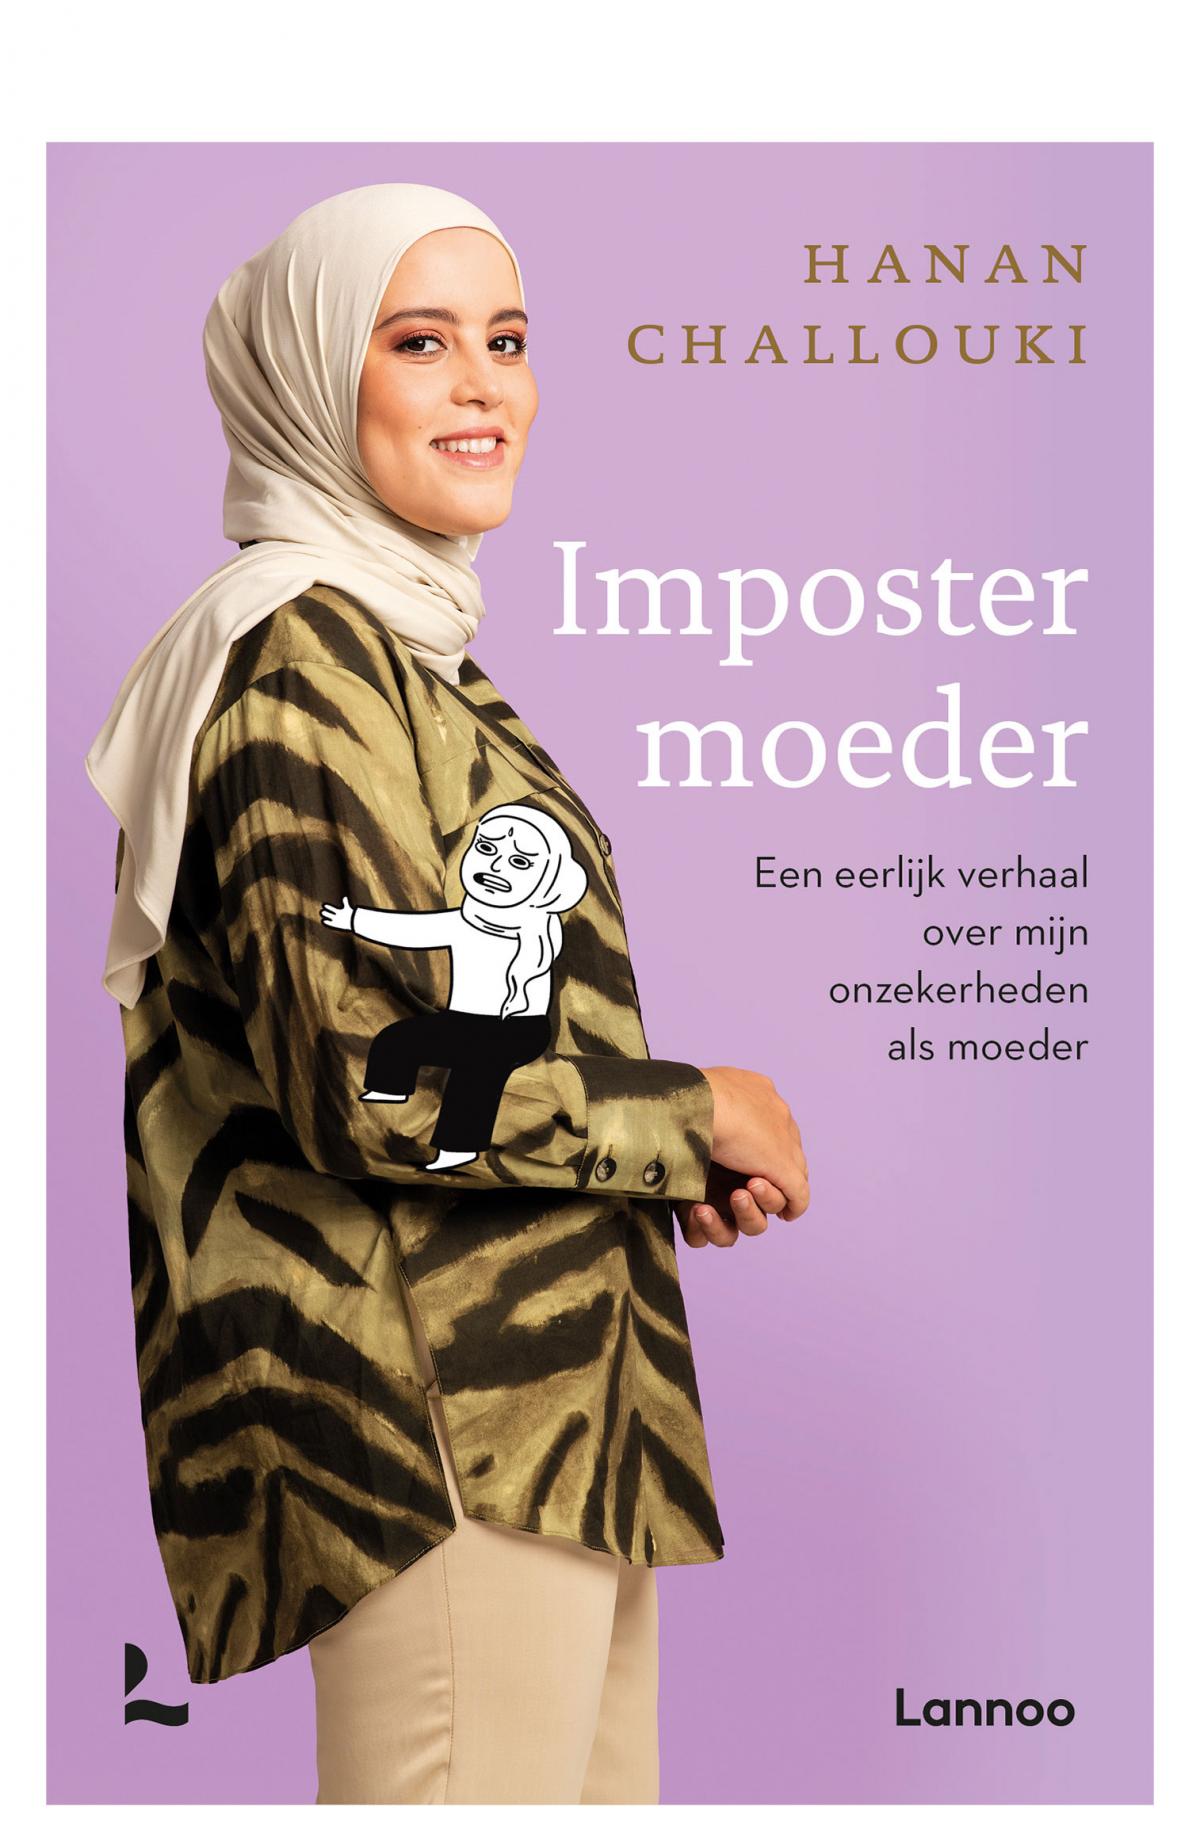 Boek 'Imposter moeder' van Hanan Challouki